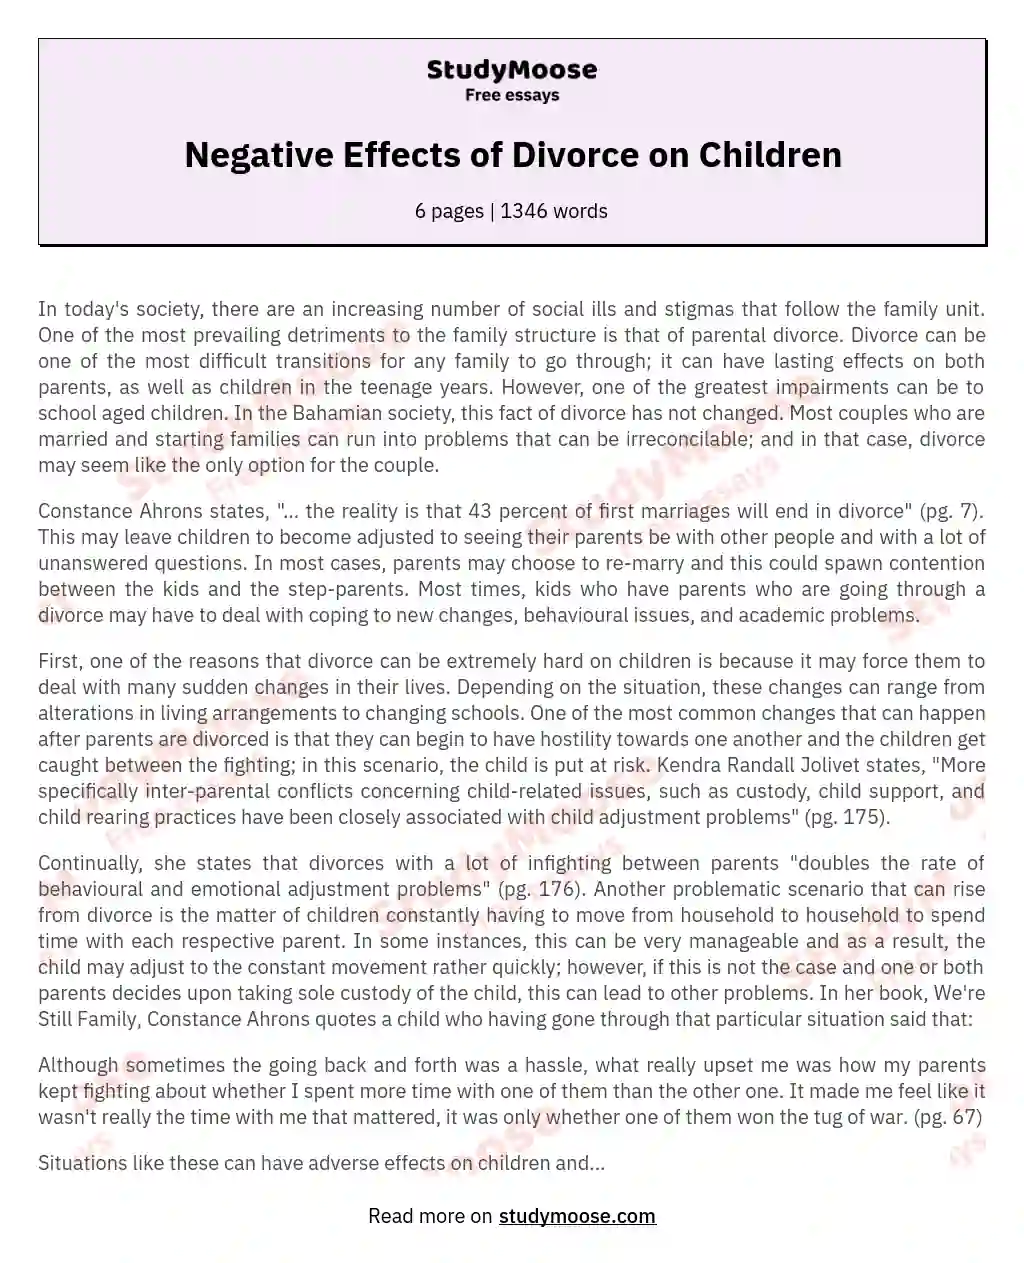 Negative Effects of Divorce on Children essay